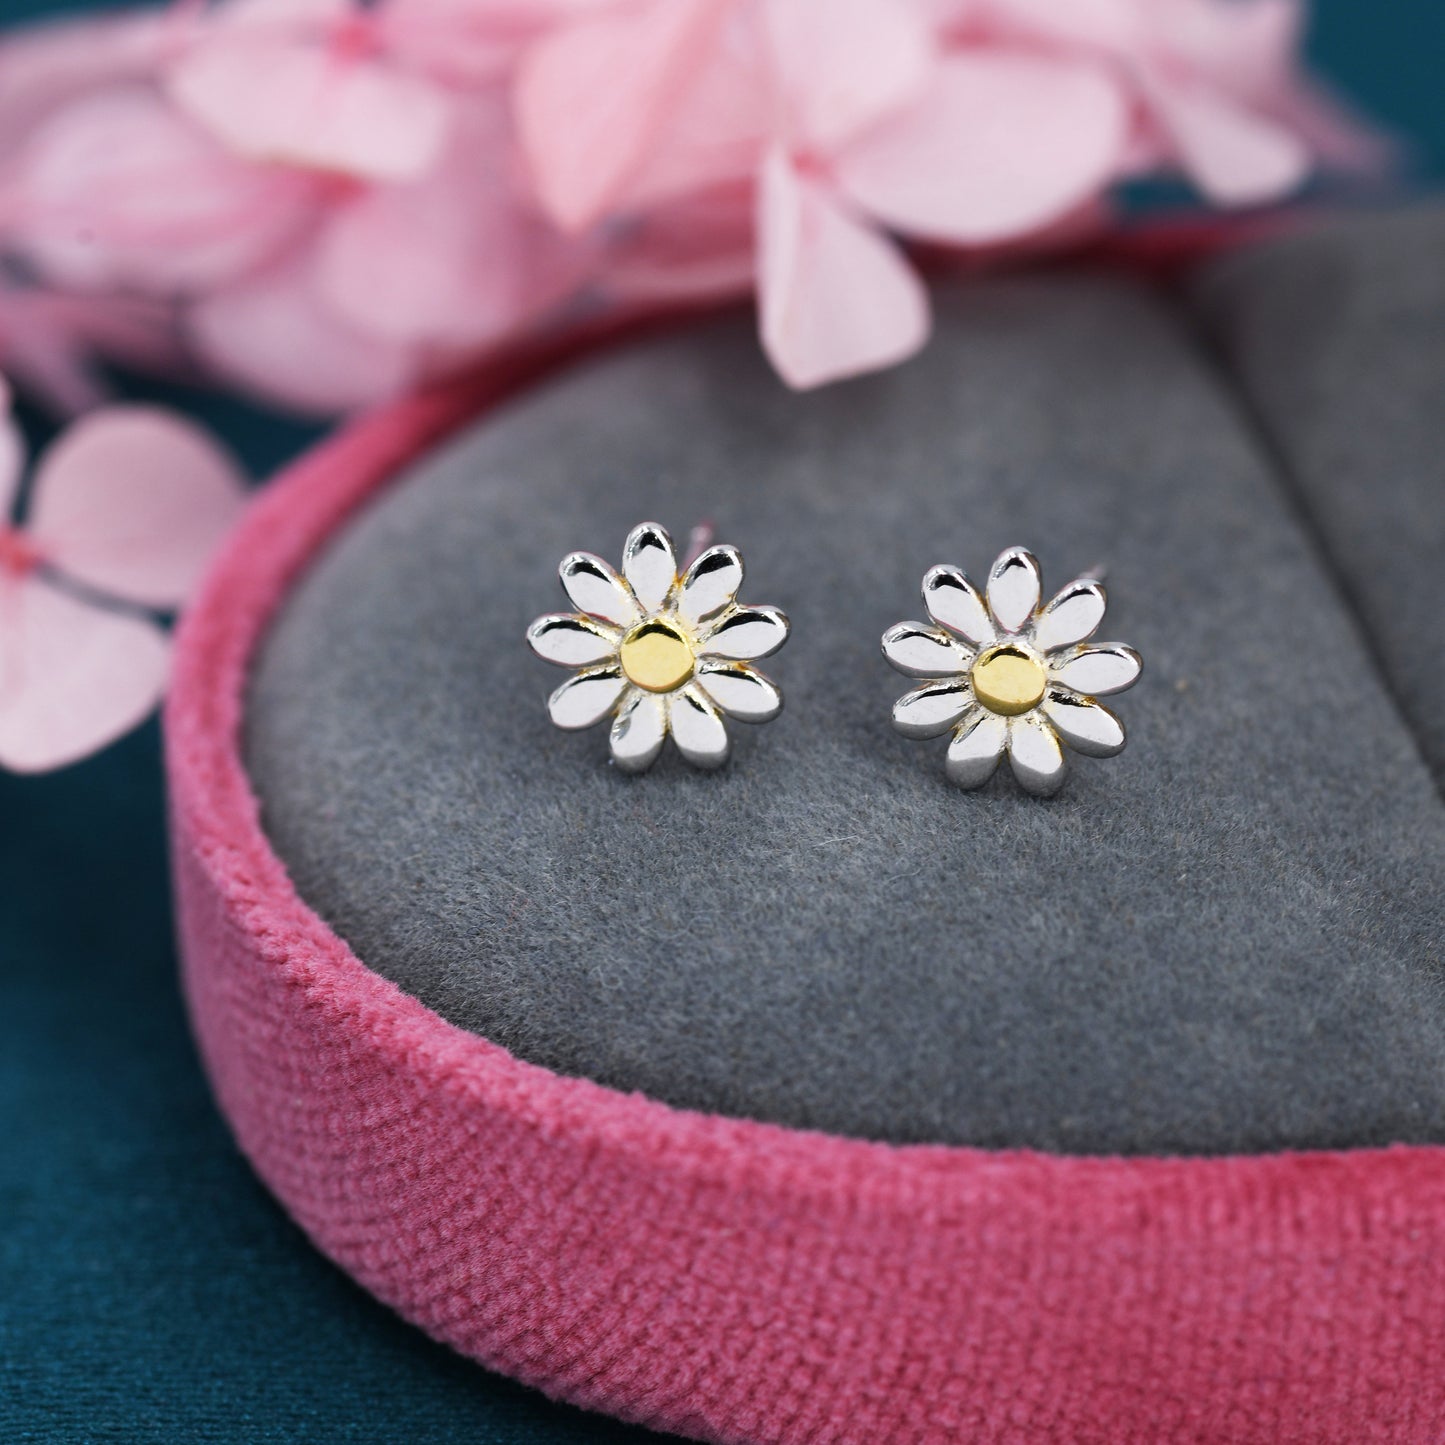 Little Daisy Flower Screw Back Earrings in Sterling Silver - Cute Flower Blossom Earrings  -   Fun, Whimsical, Earlobe or Cartilage